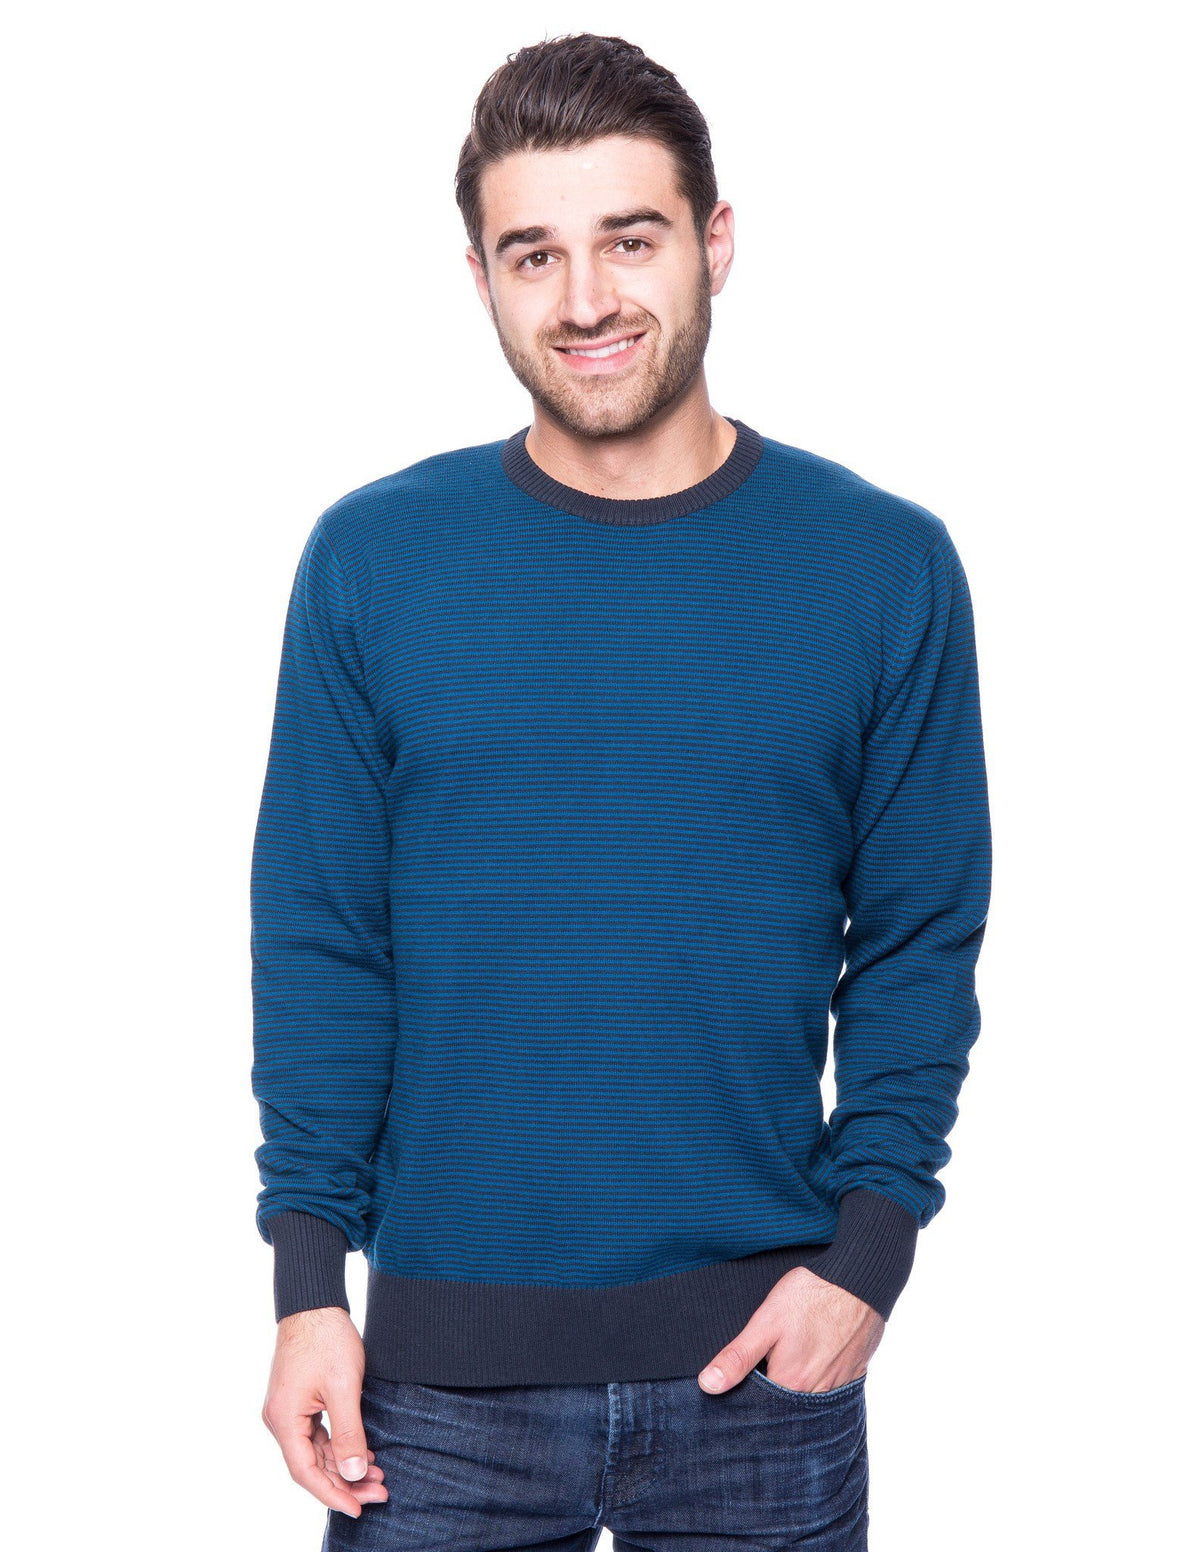 Men's Premium 100% Cotton Crew Neck Sweater - Stripes Navy/Dark Blue